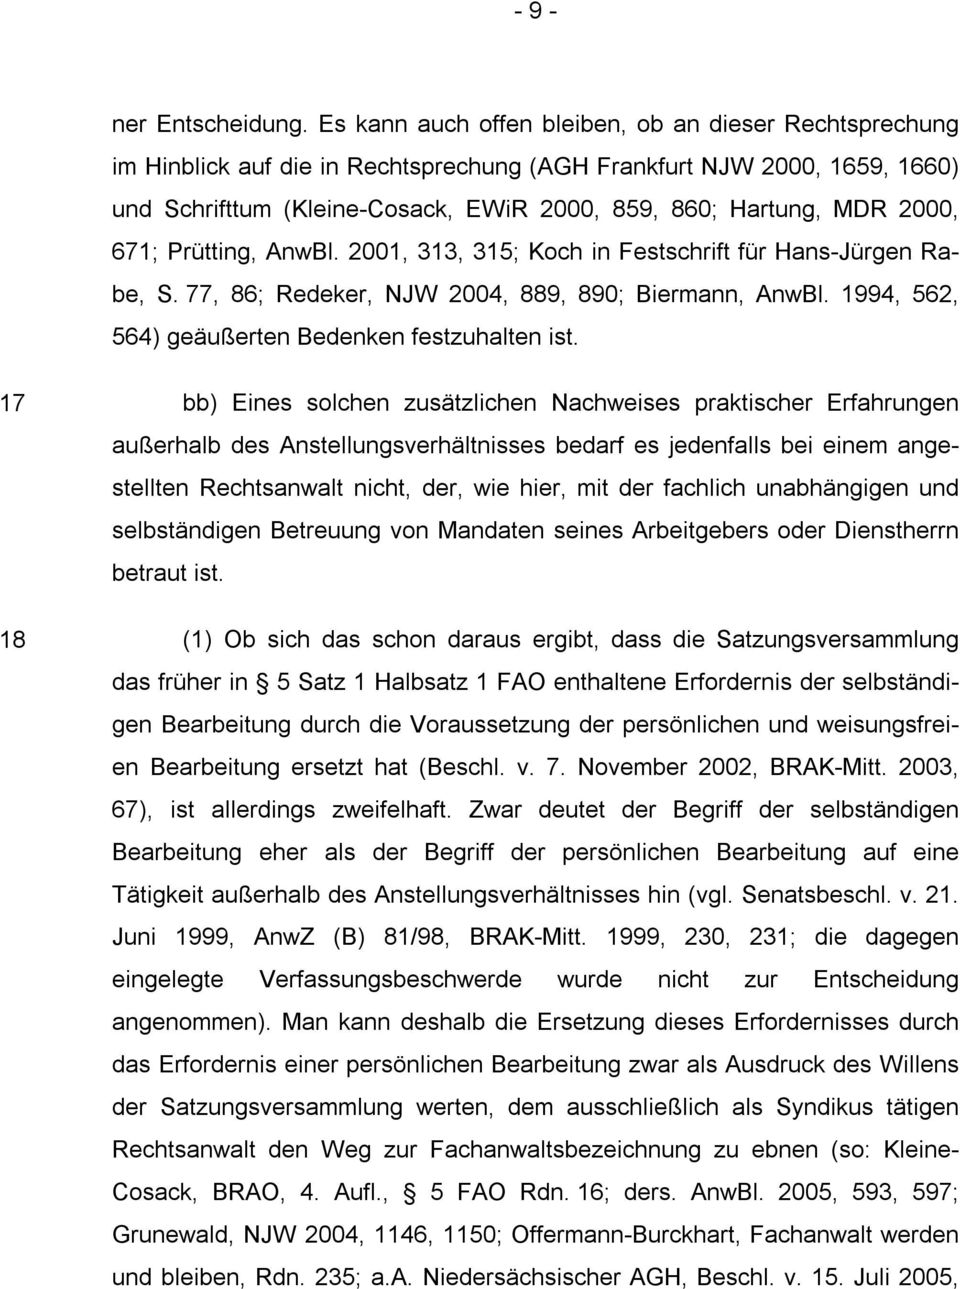 2000, 671; Prütting, AnwBl. 2001, 313, 315; Koch in Festschrift für Hans-Jürgen Rabe, S. 77, 86; Redeker, NJW 2004, 889, 890; Biermann, AnwBl. 1994, 562, 564) geäußerten Bedenken festzuhalten ist.